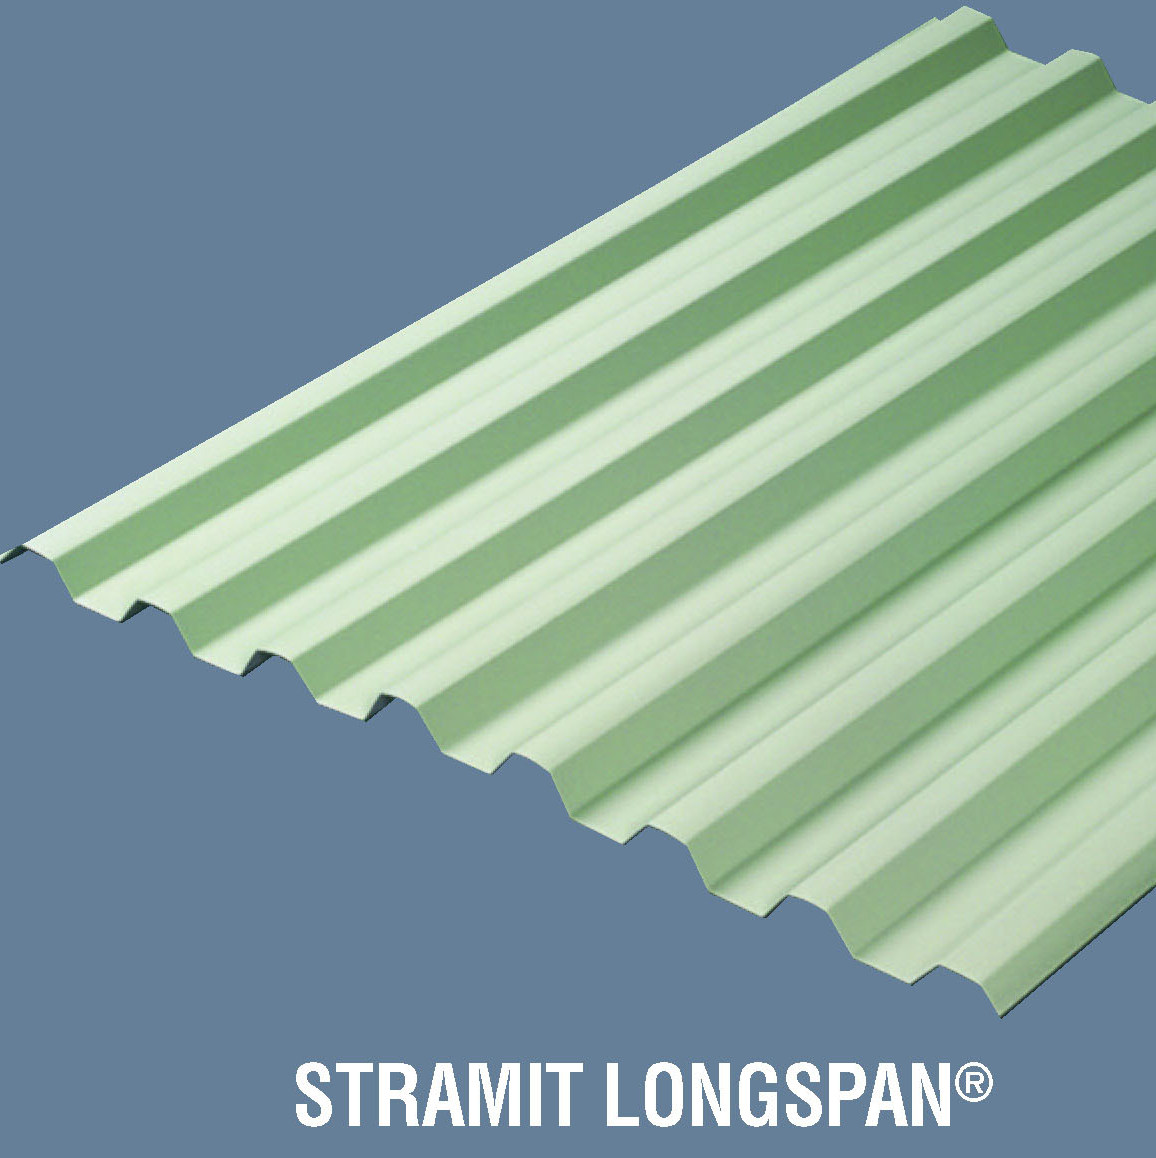 Stramit Longspan